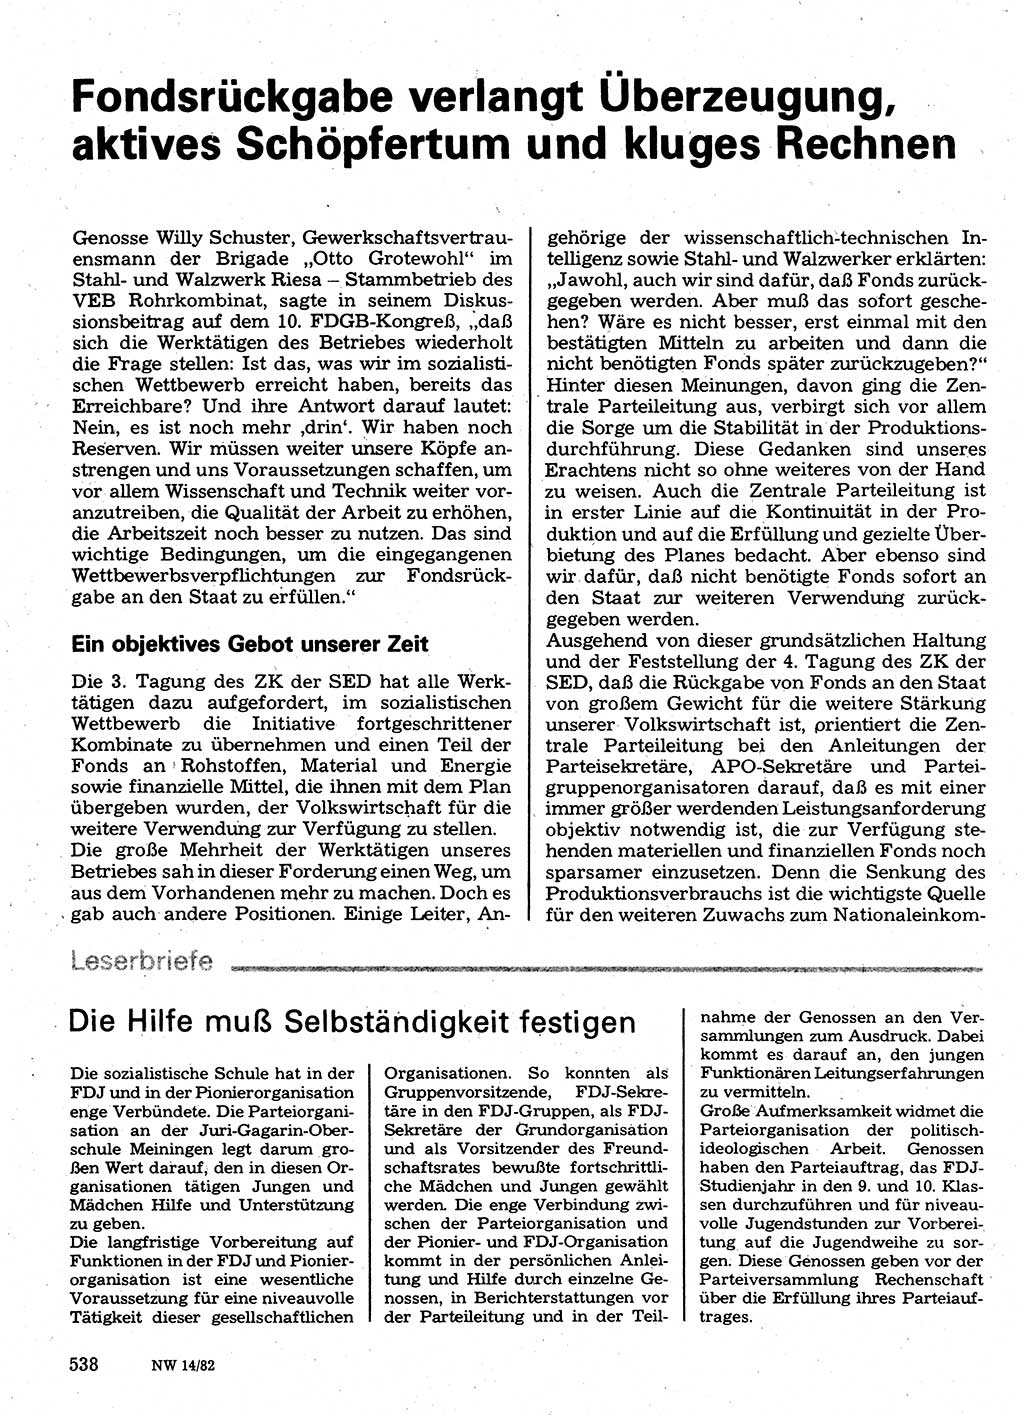 Neuer Weg (NW), Organ des Zentralkomitees (ZK) der SED (Sozialistische Einheitspartei Deutschlands) für Fragen des Parteilebens, 37. Jahrgang [Deutsche Demokratische Republik (DDR)] 1982, Seite 538 (NW ZK SED DDR 1982, S. 538)